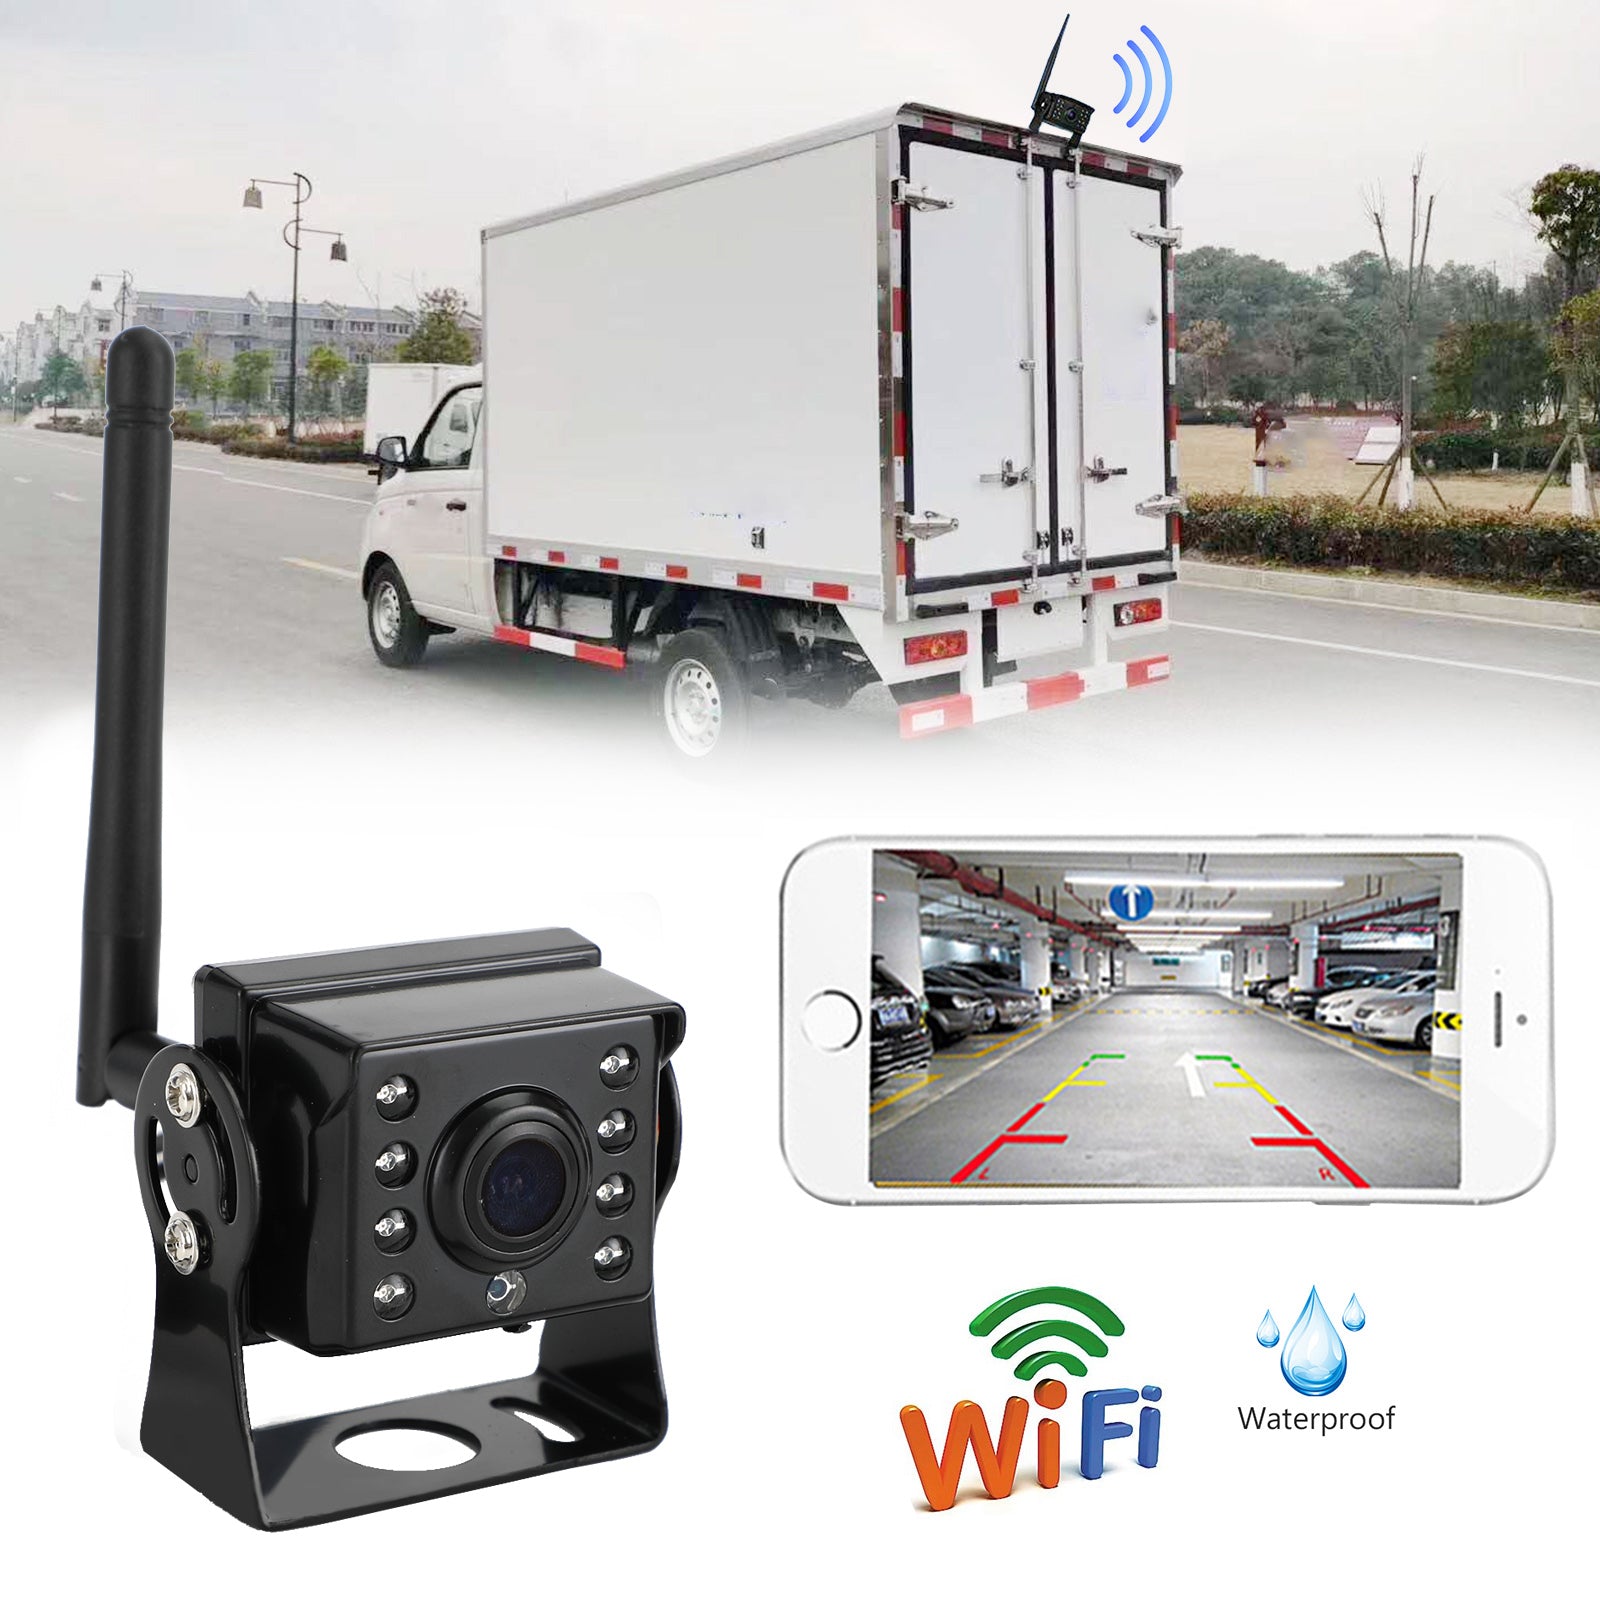 WiFi sans fil voiture camion RV remorque vue arrière caméra de recul CCTV pour iOS Android